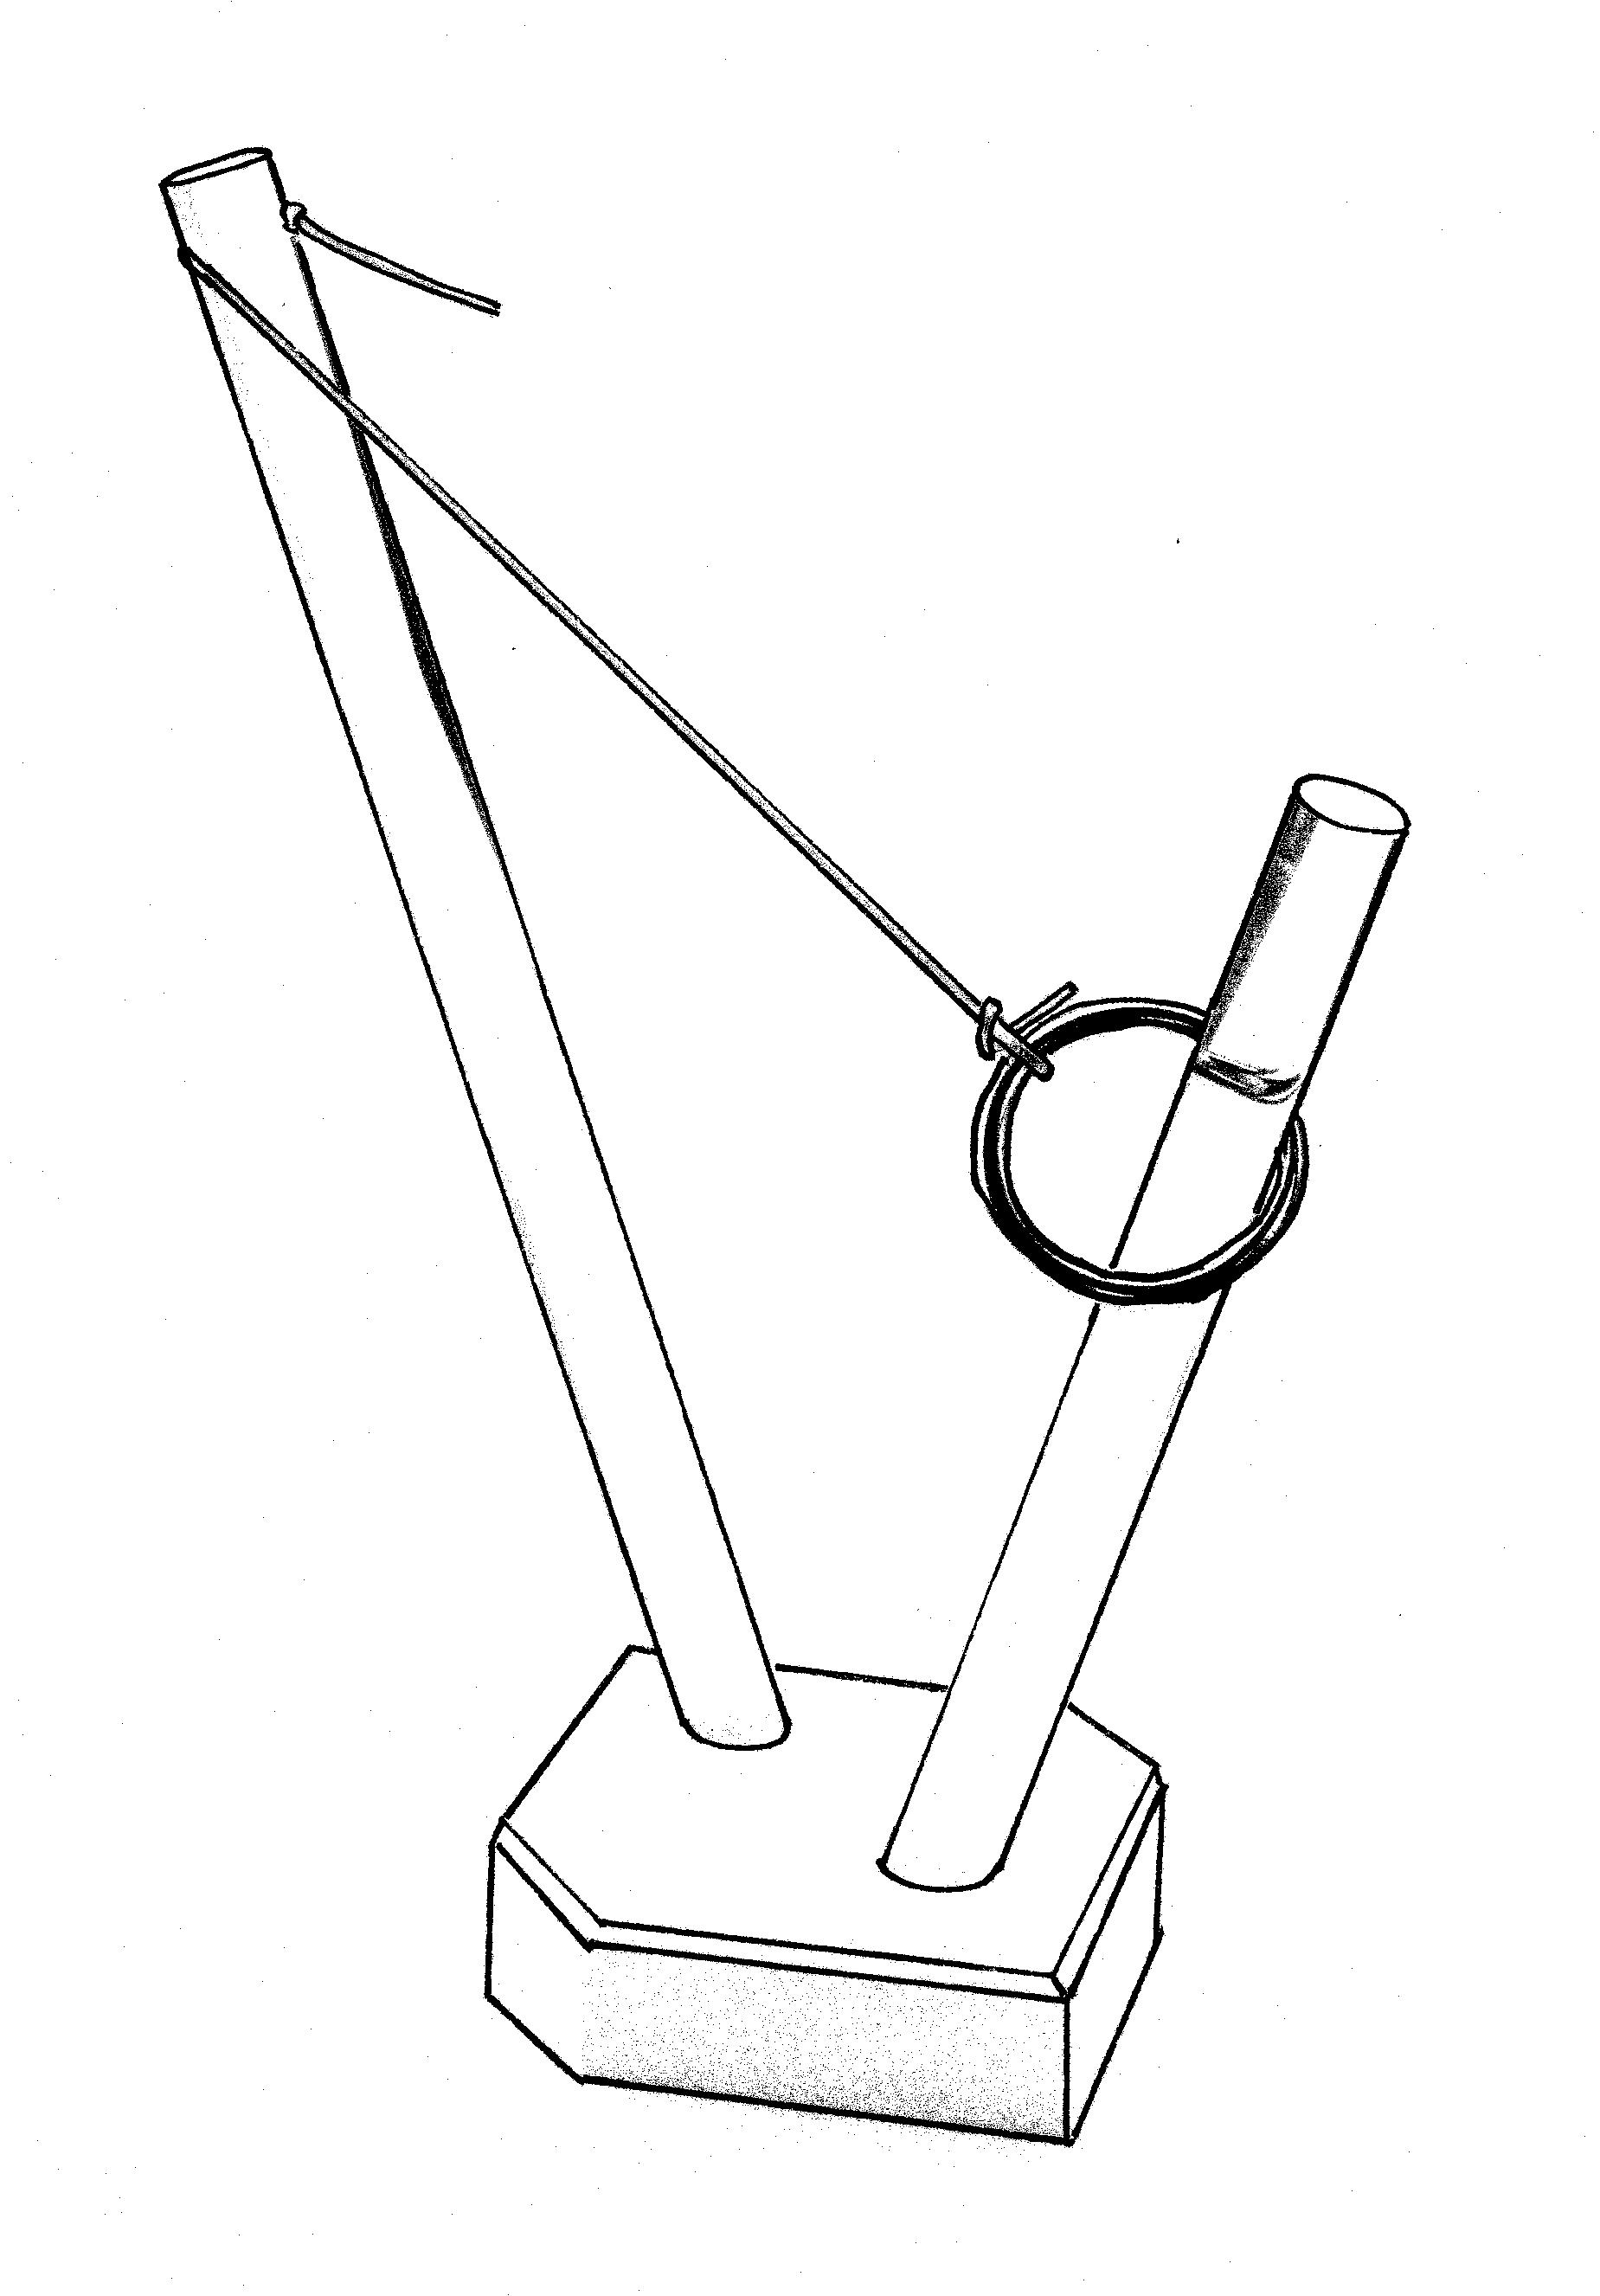 orbiter.drawing.1.jpg